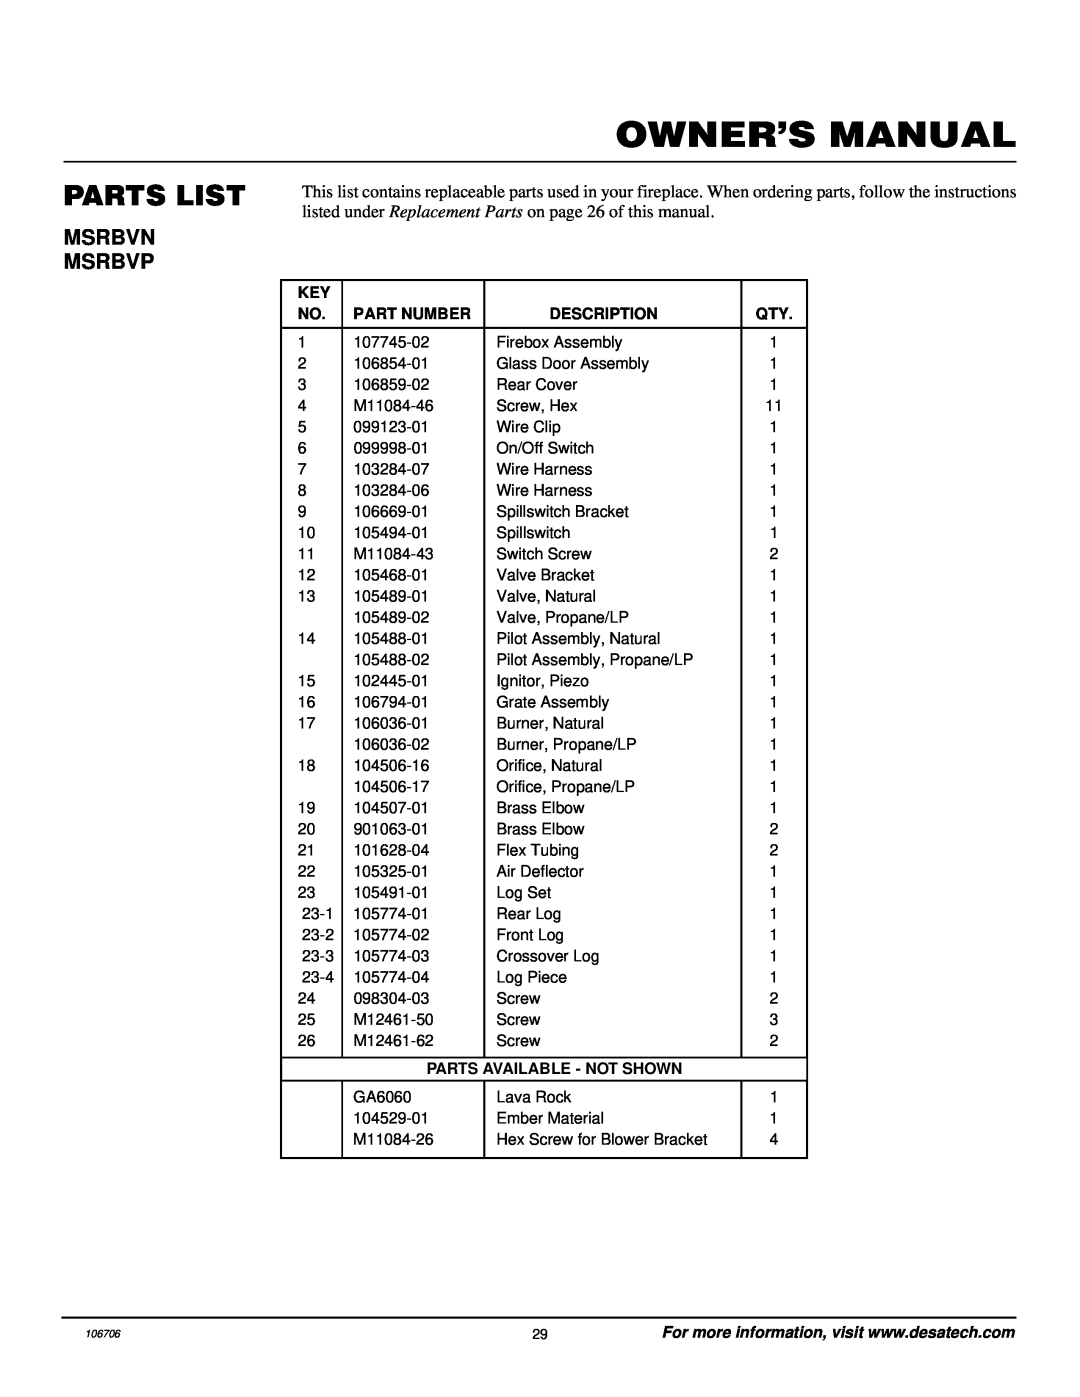 Desa MSRBVP, MSRBVN installation manual Parts List, Msrbvn Msrbvp, Part Number, Description, Parts Available - Not Shown 